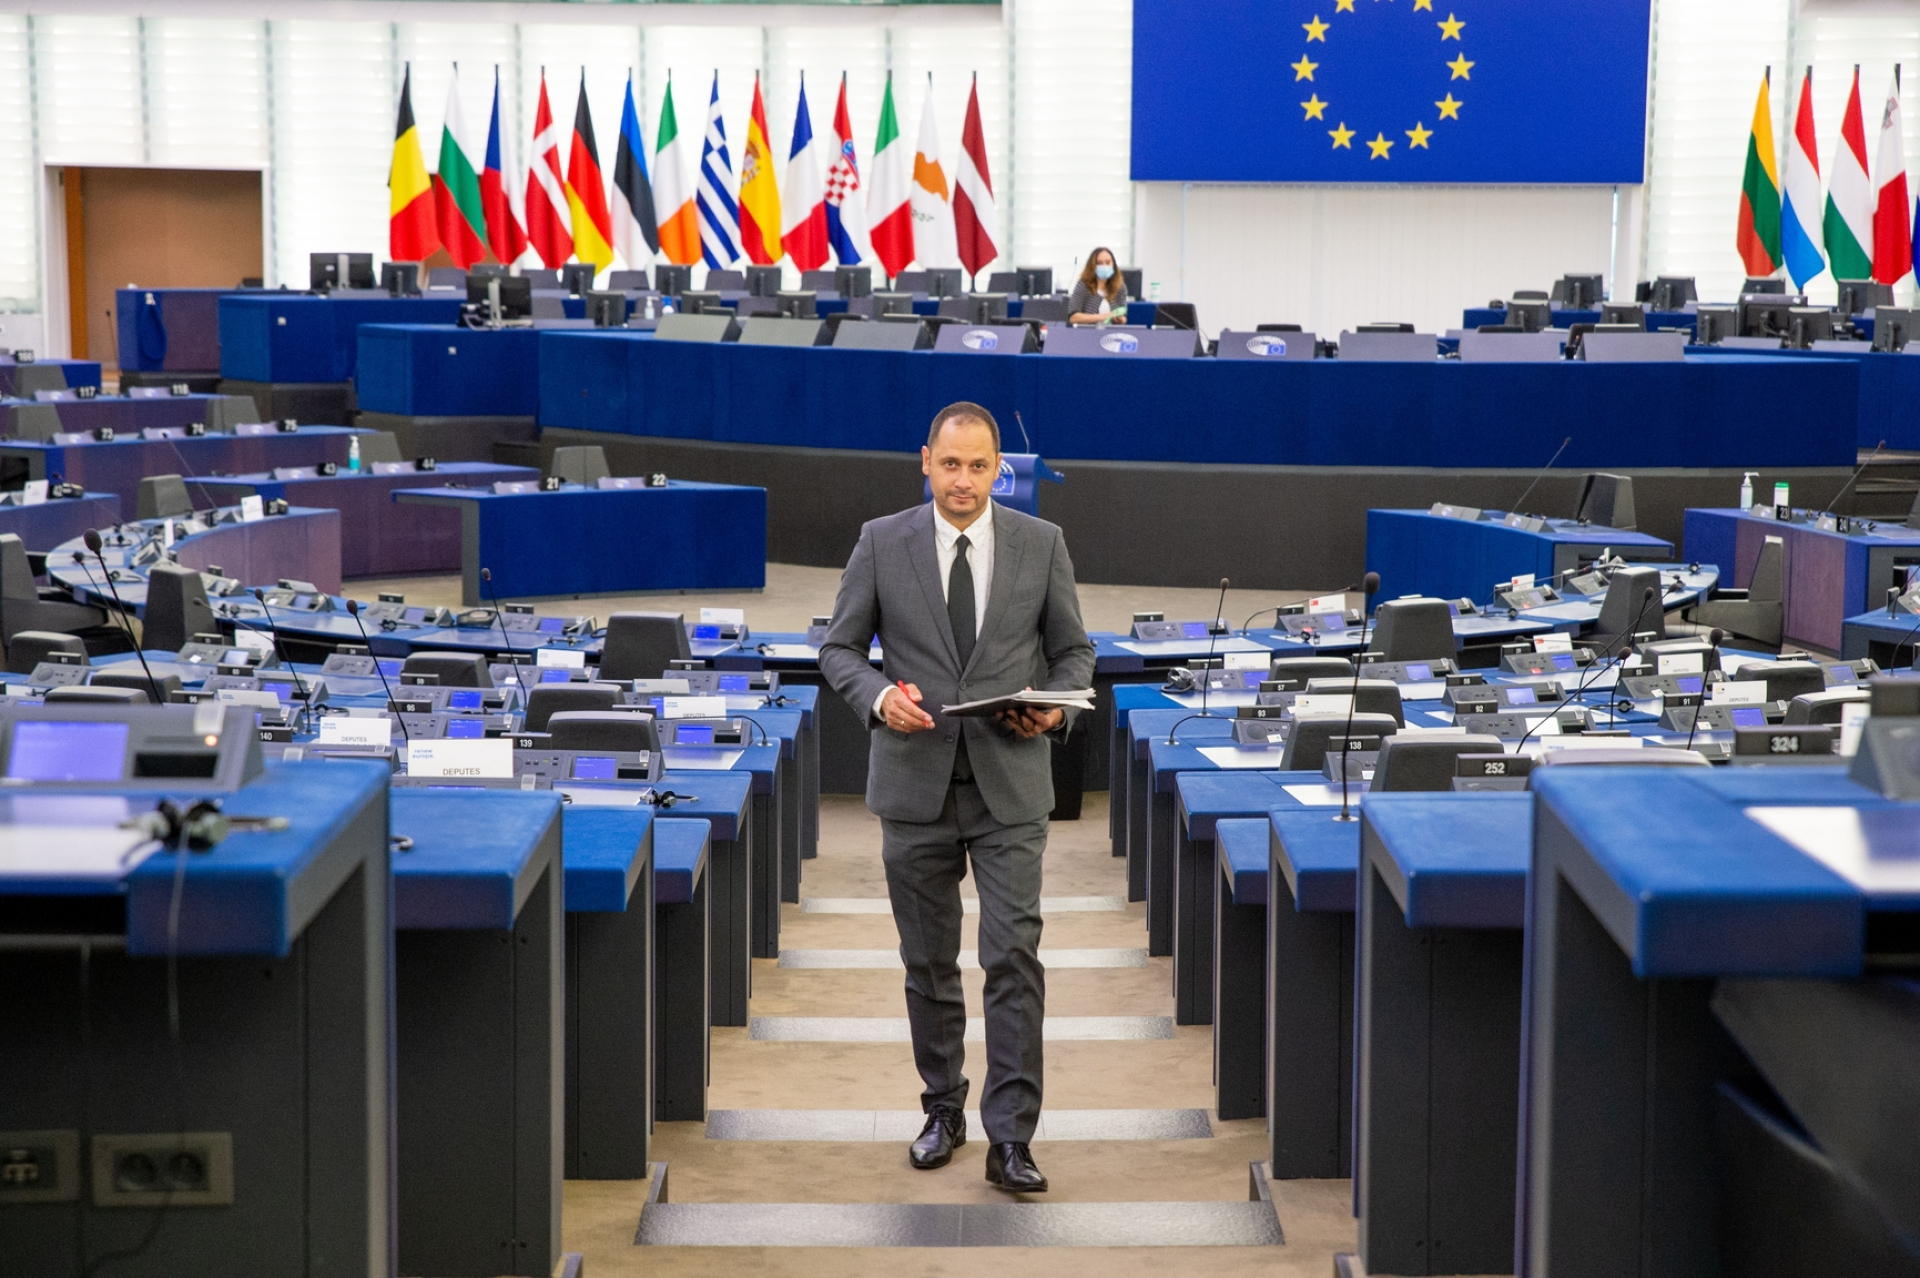 Петър Витанов: Натискът от ЕС пречи на решаването на спора между България и РС Македония